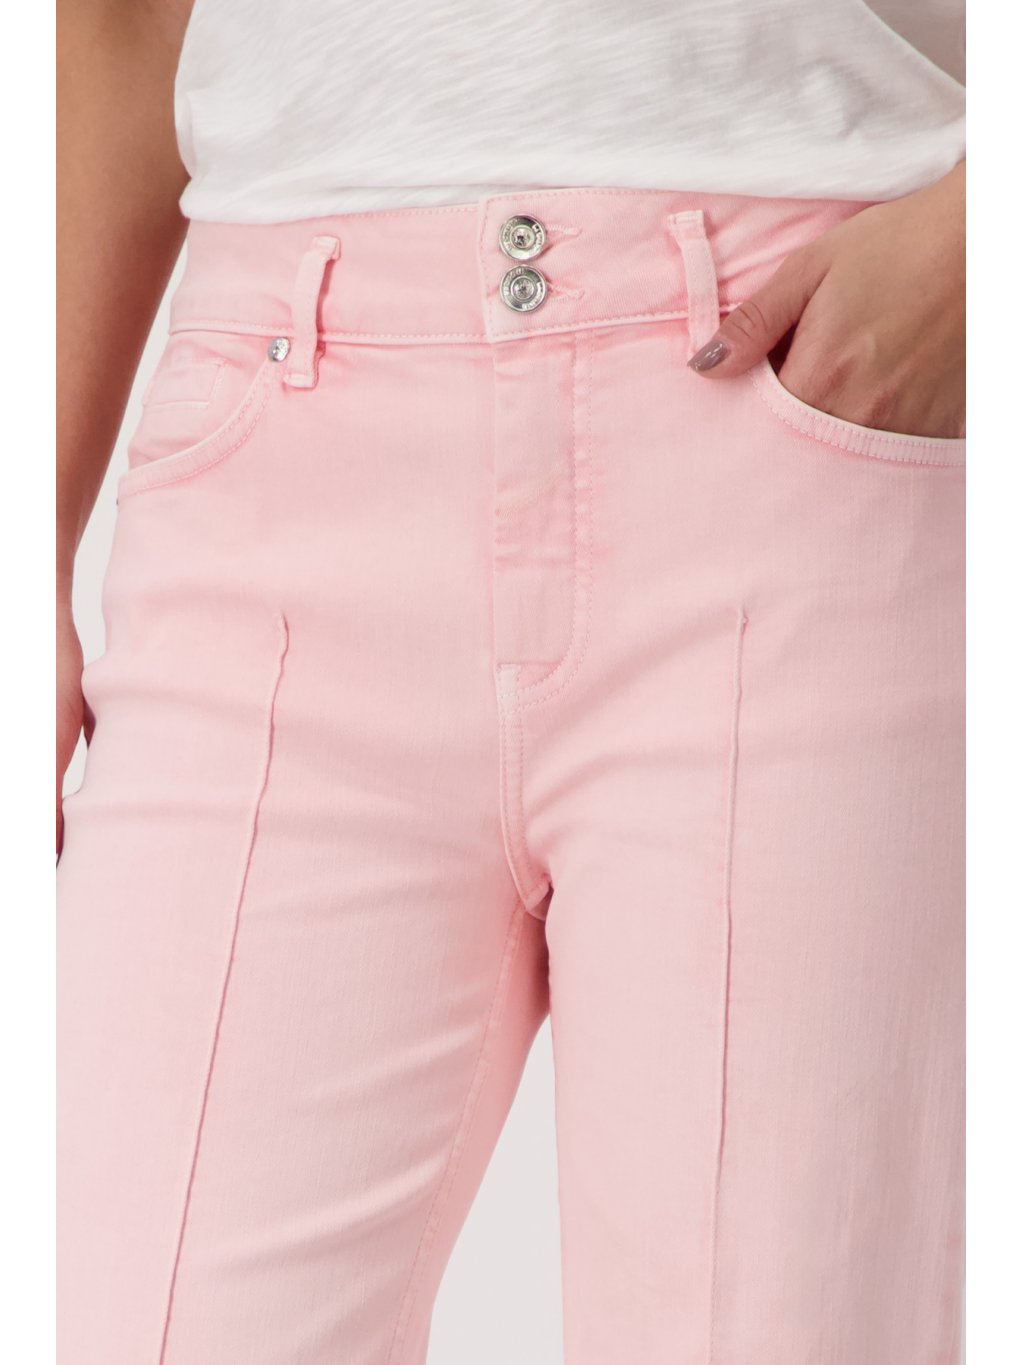 Kalhoty Monari 8314 růžové širokého střihu s manžetami 